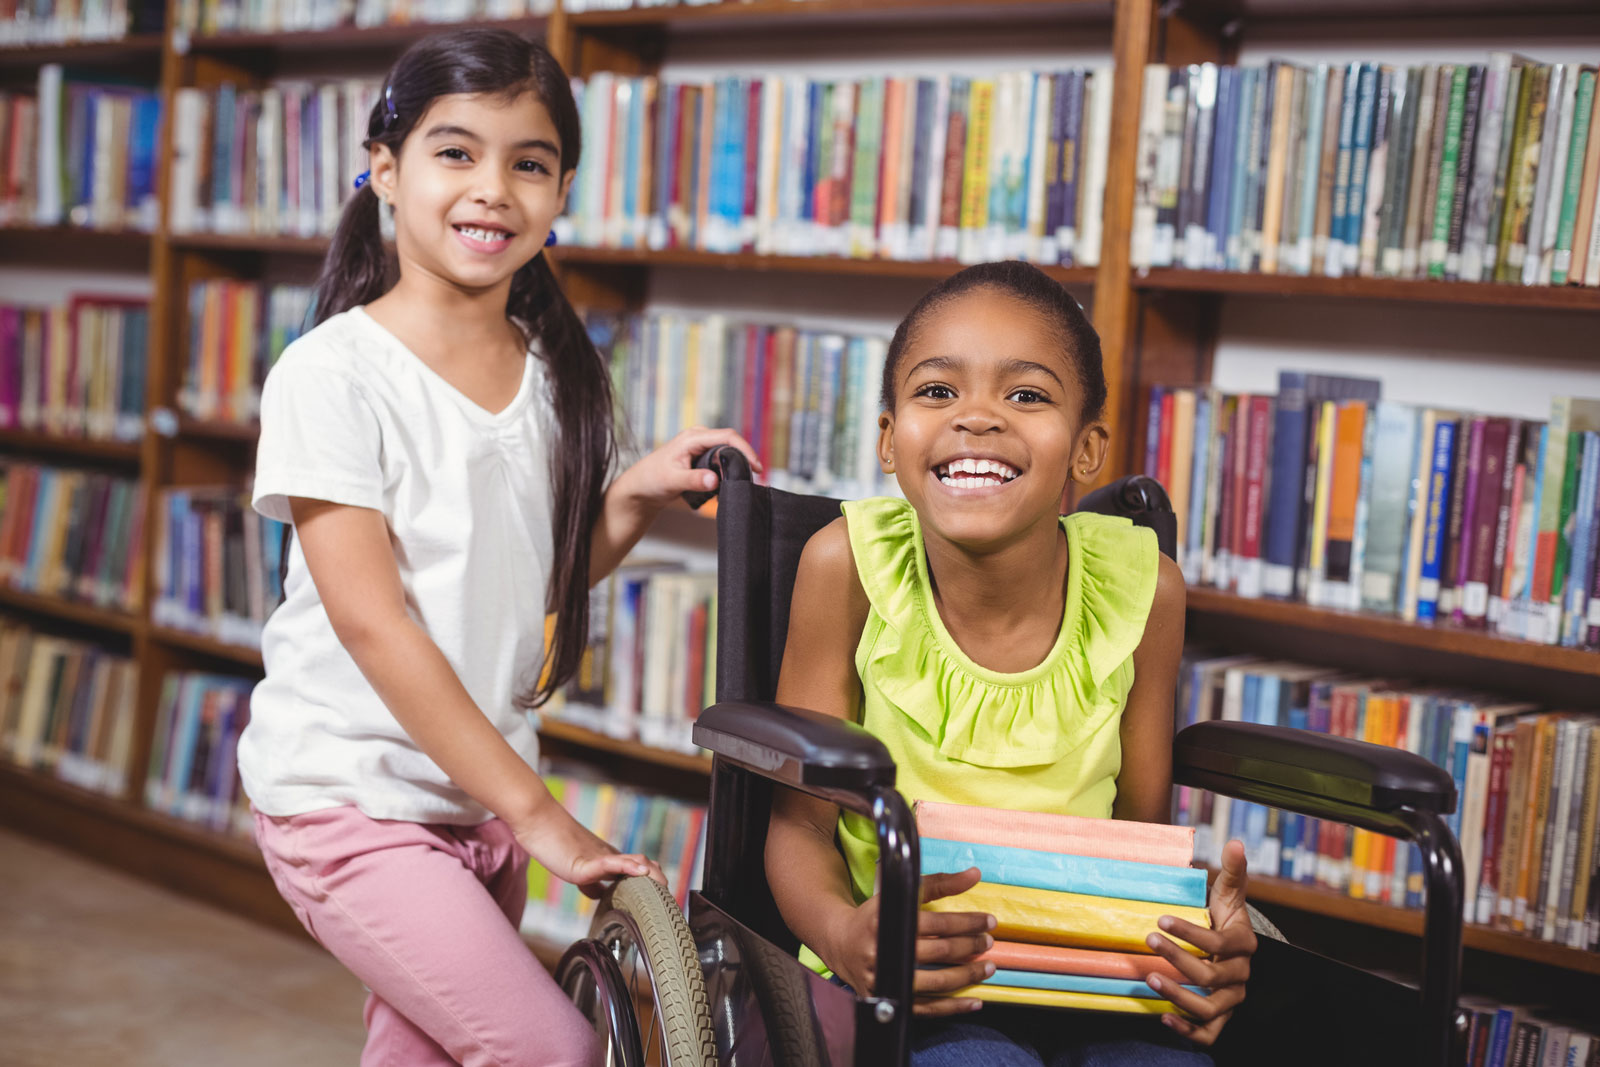 طالبتان في المكتبة ، مبتسما ، مع الكتب